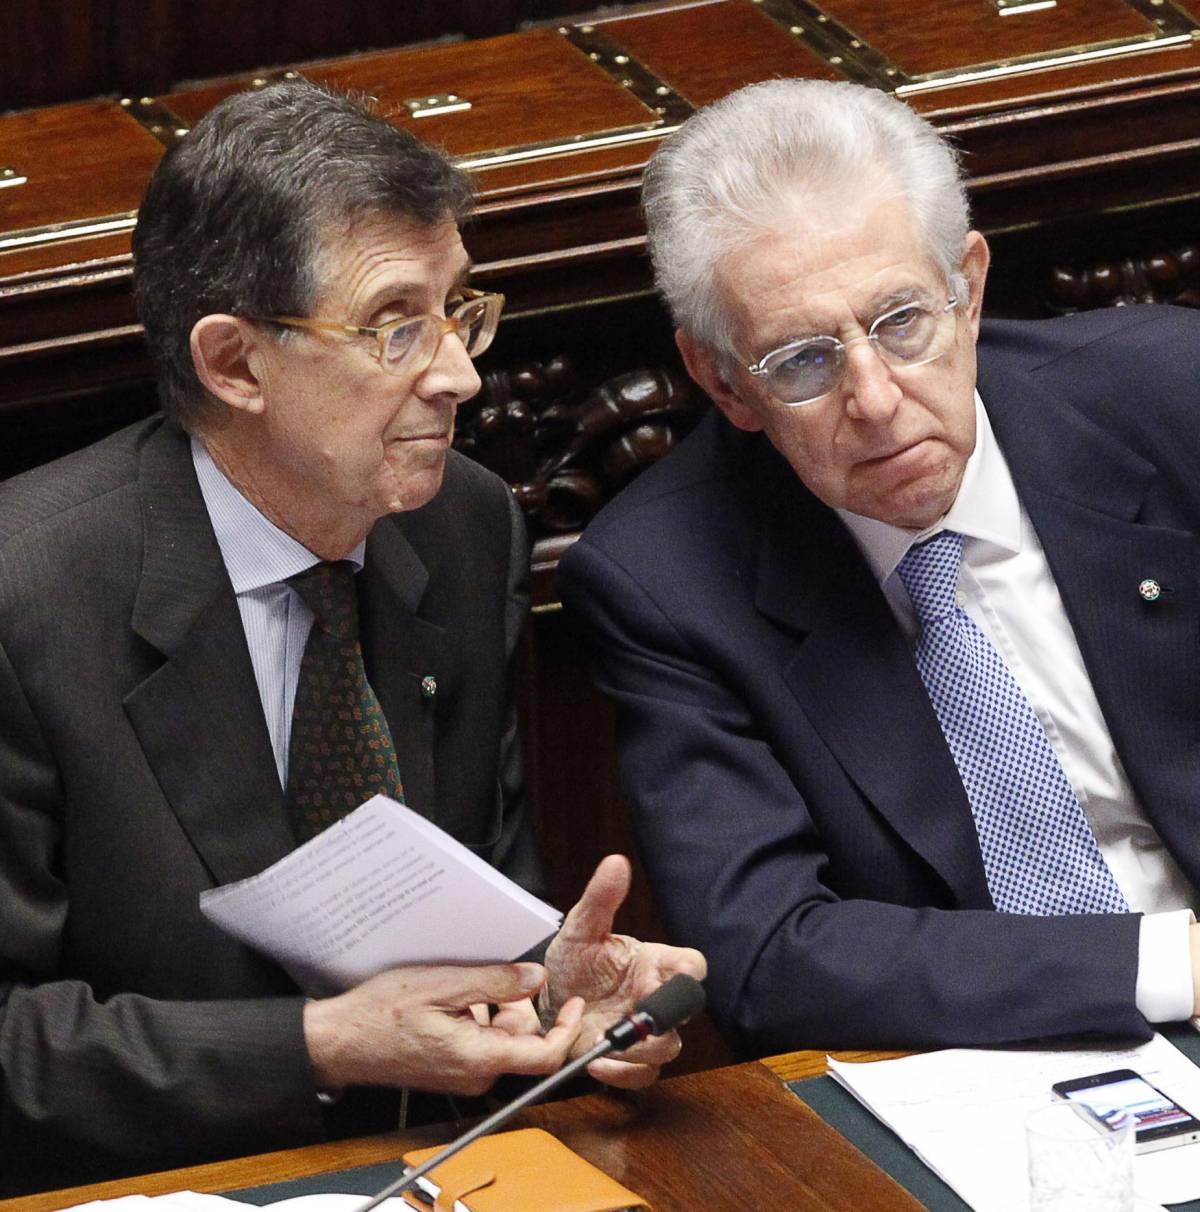 La Bce dà lezioni a Monti: "Bisogna tagliare le Province"